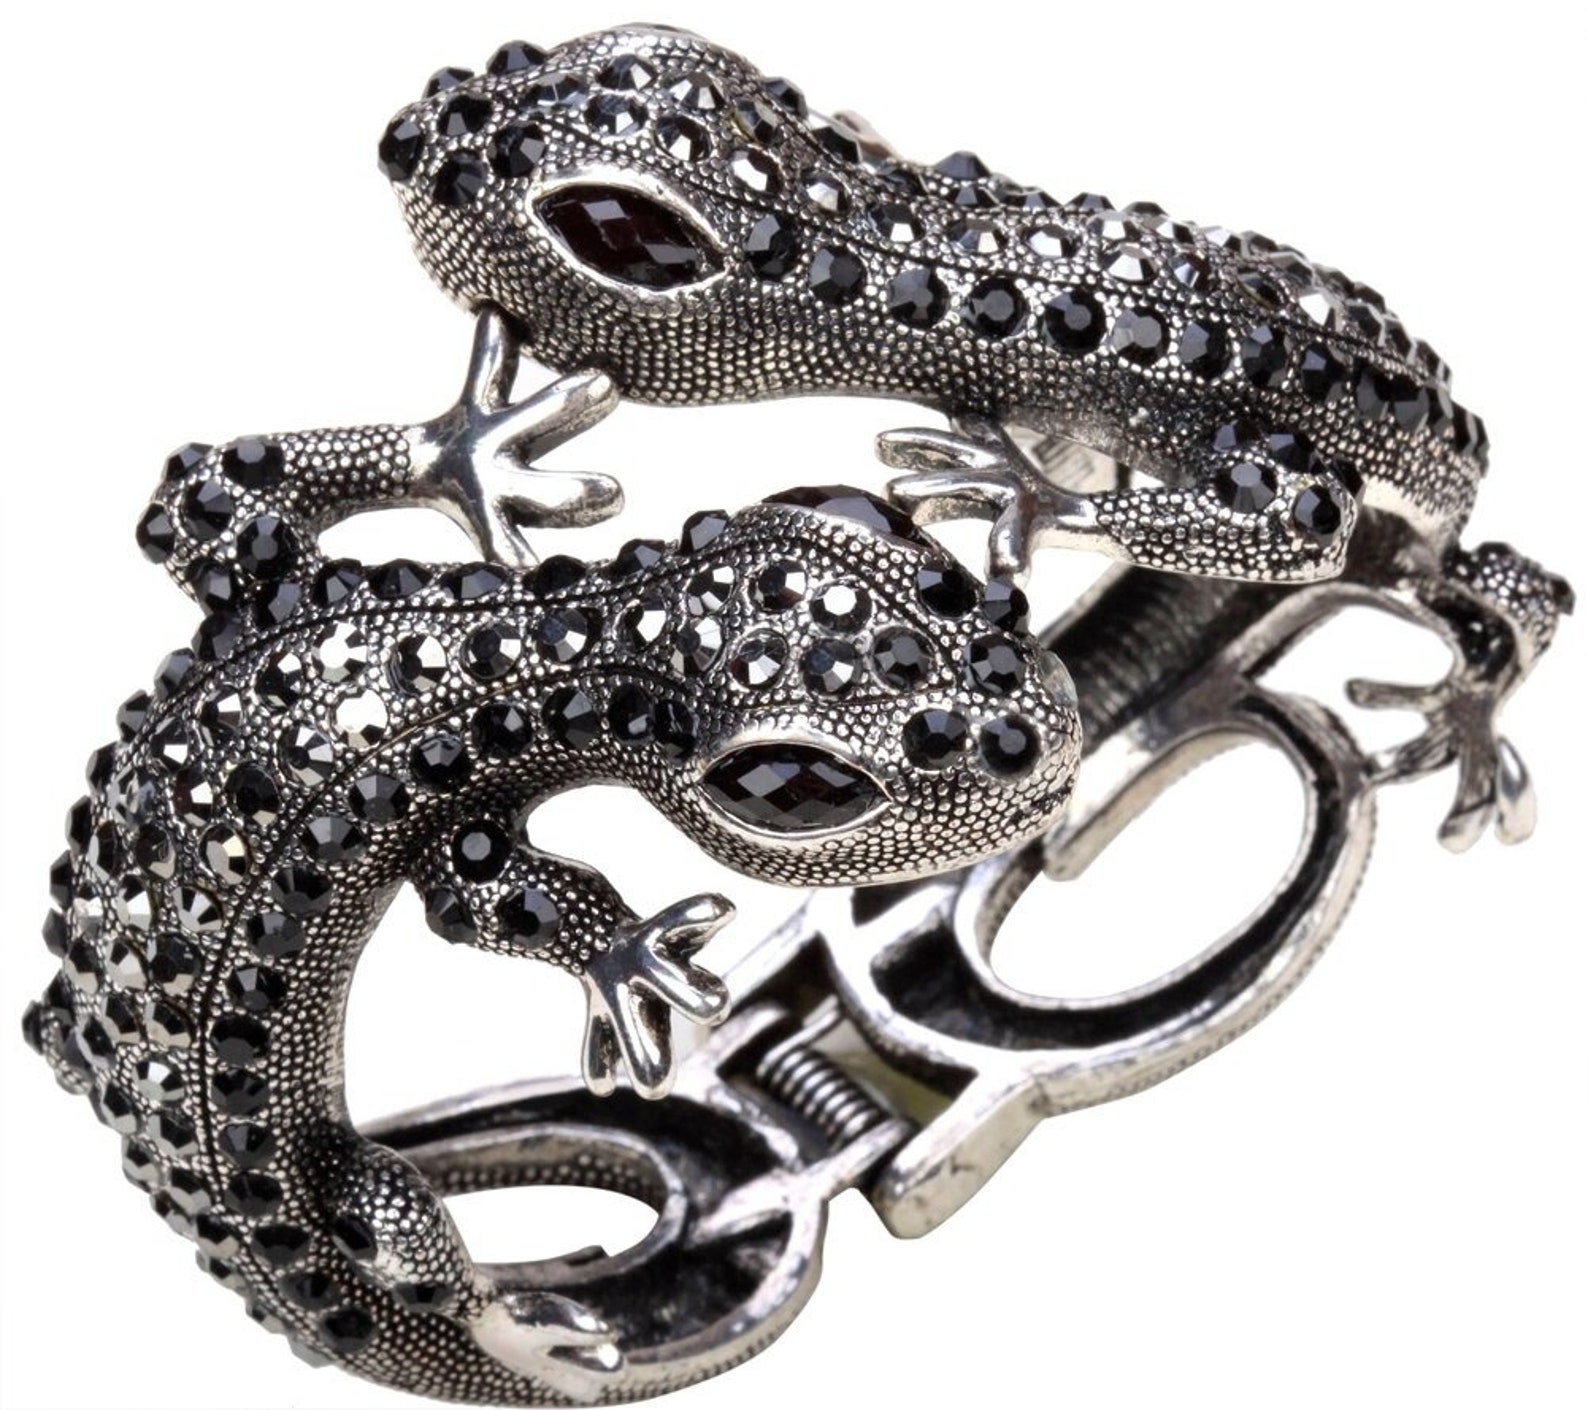 Lizard bangle bracelet statement jewelry Lizard jewelry | Etsy